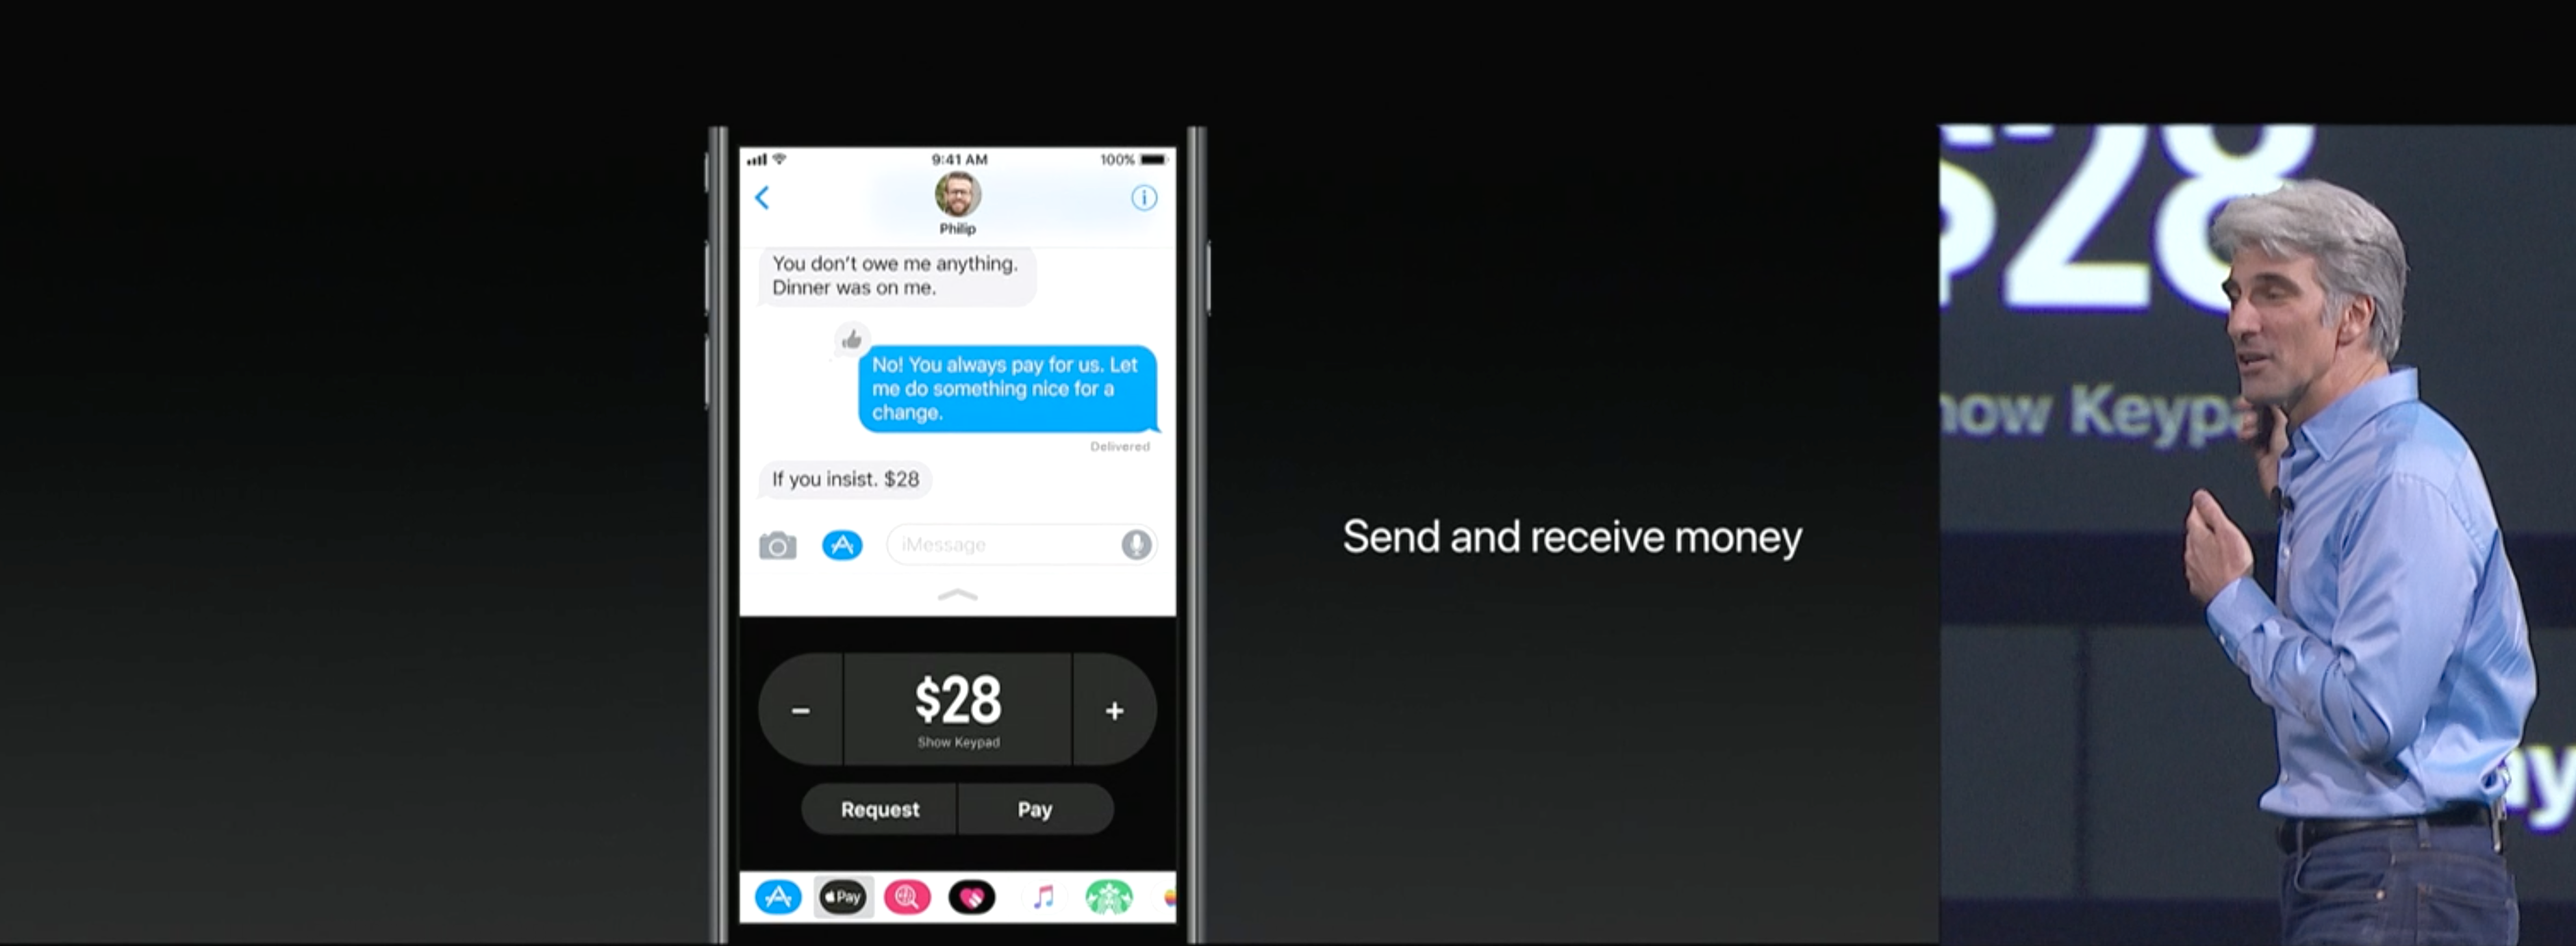 Du kan nå sende penger direkte via iMessage, gjennom Apple Pay-standarden. Bilde: Skjermdump/Apple